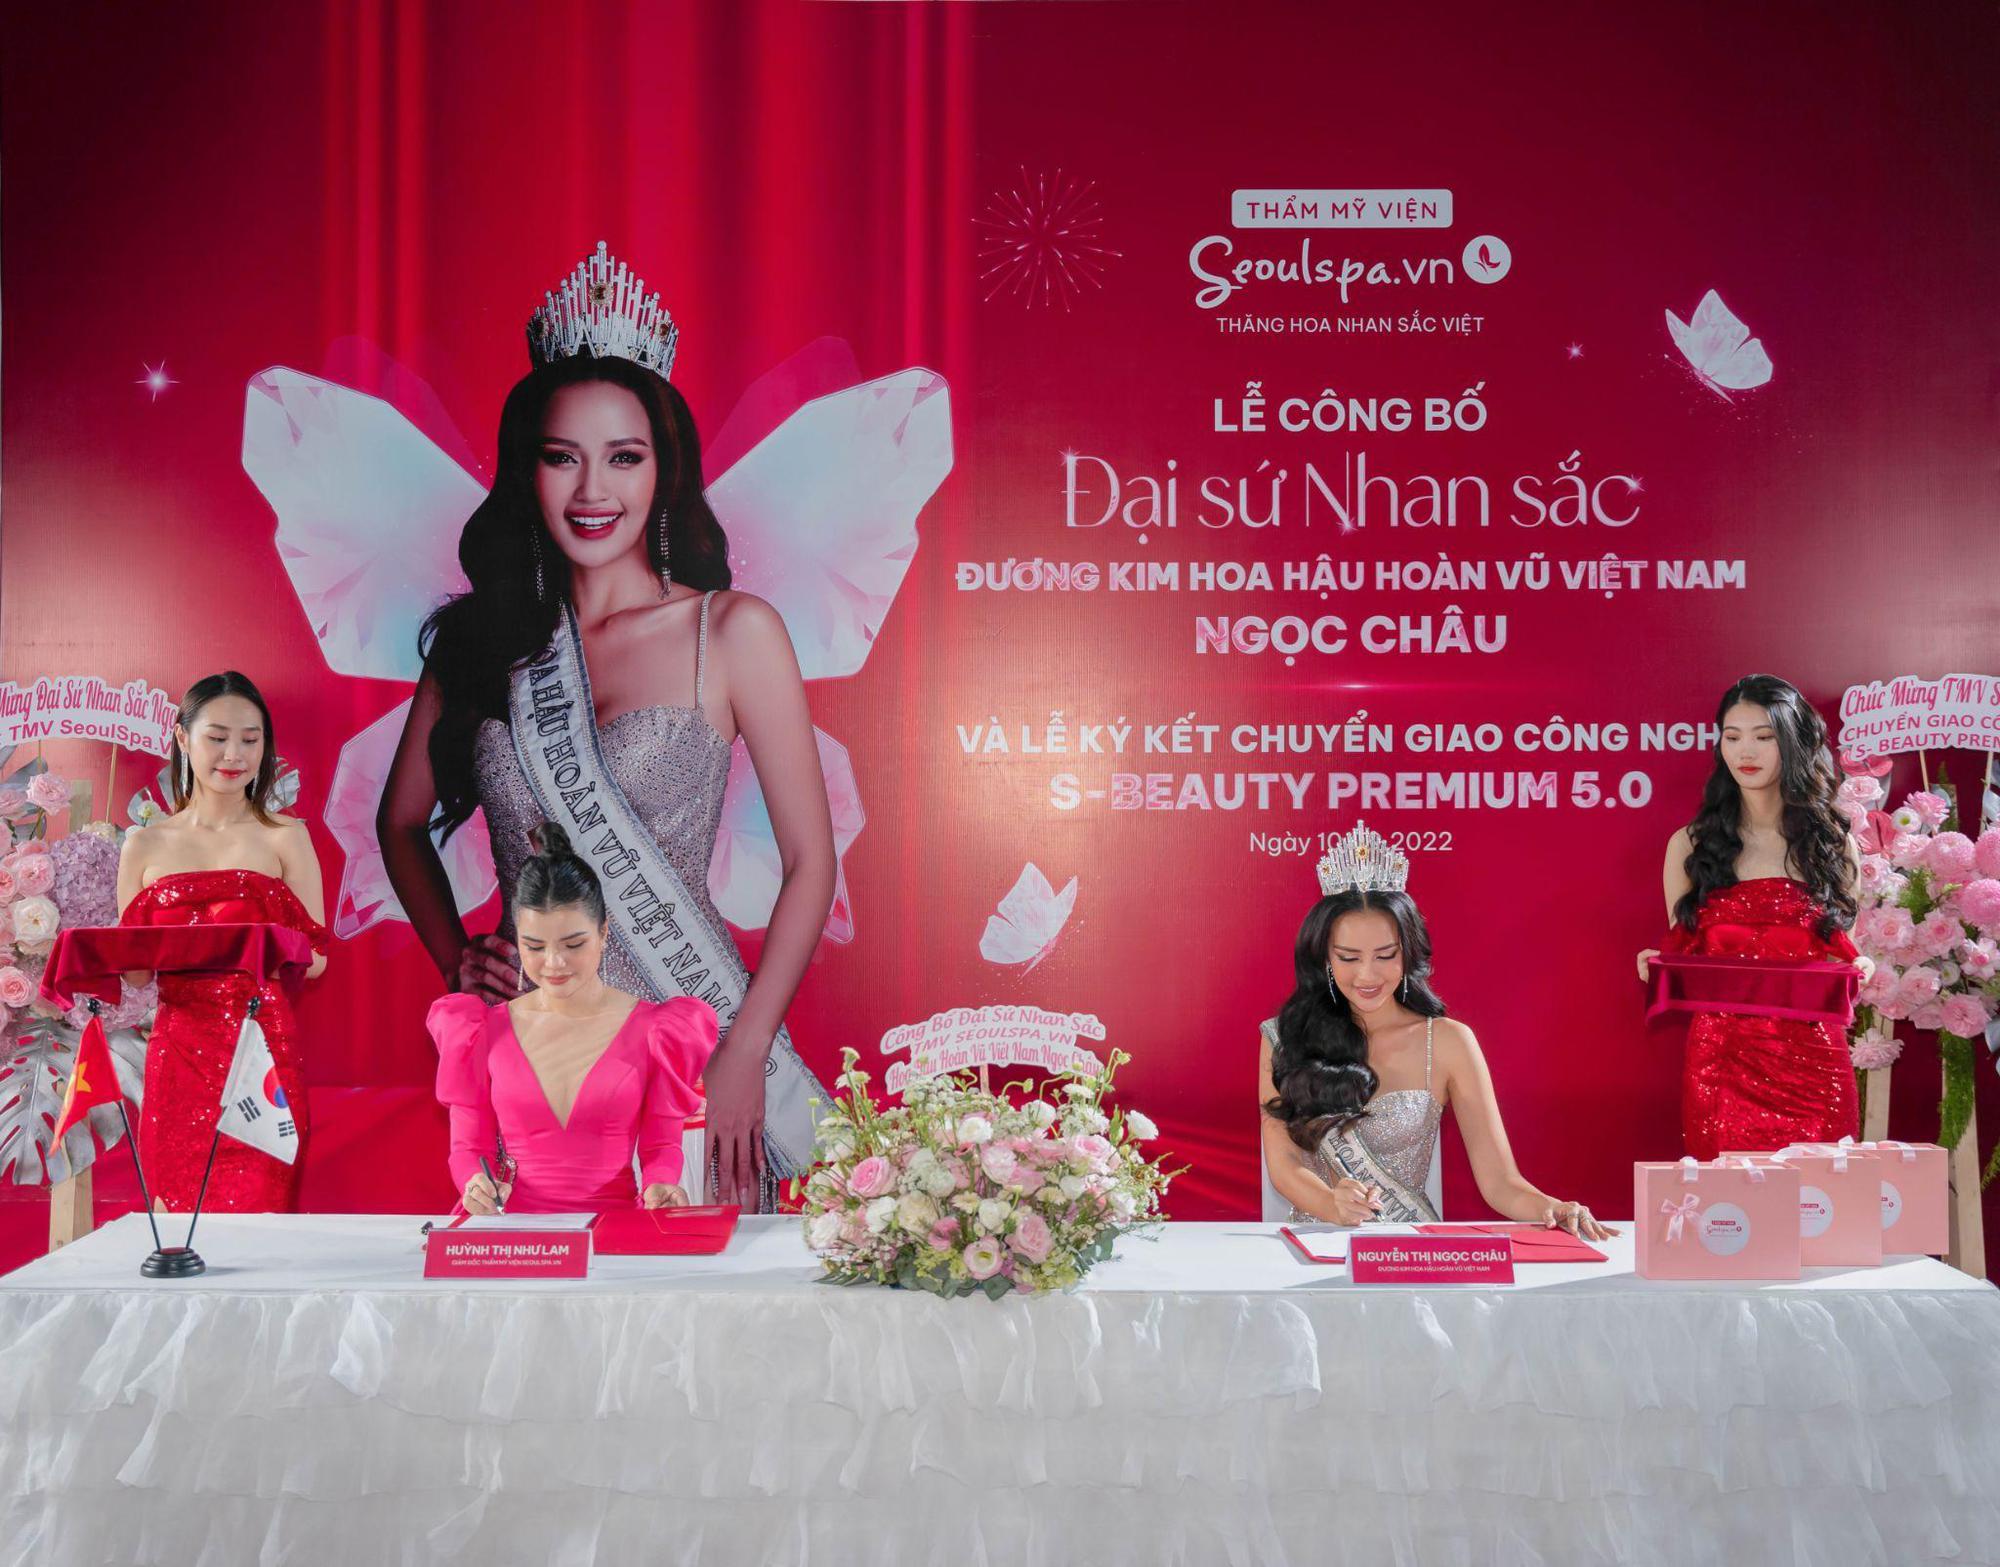 Hoa hậu Ngọc Châu đẹp rạng ngời trong lễ ký kết làm Đại sứ Nhan sắc với Thẩm mỹ viện SeoulSpa.Vn - Ảnh 1.